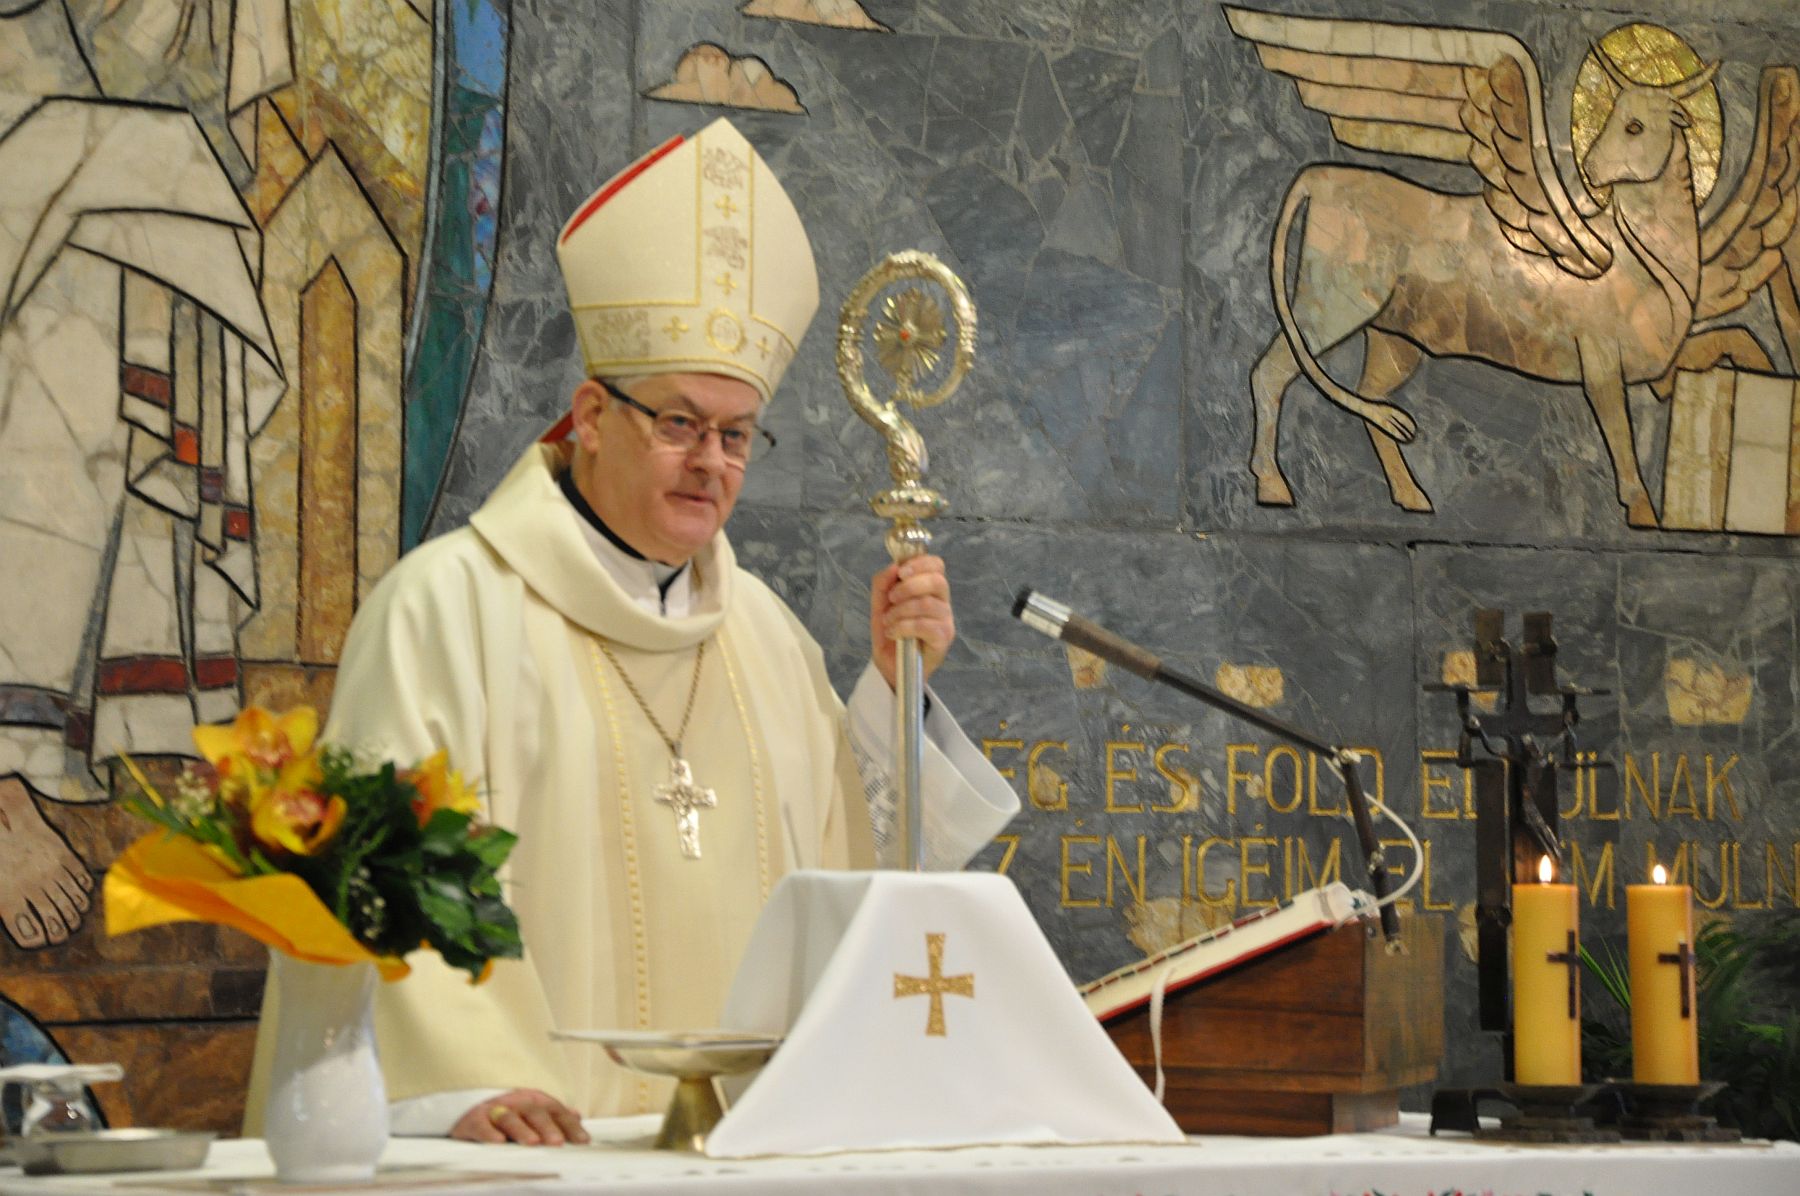 Az Almássy-telepi templomban lesz az elsőcsütörtöki eucharisztia ünnep